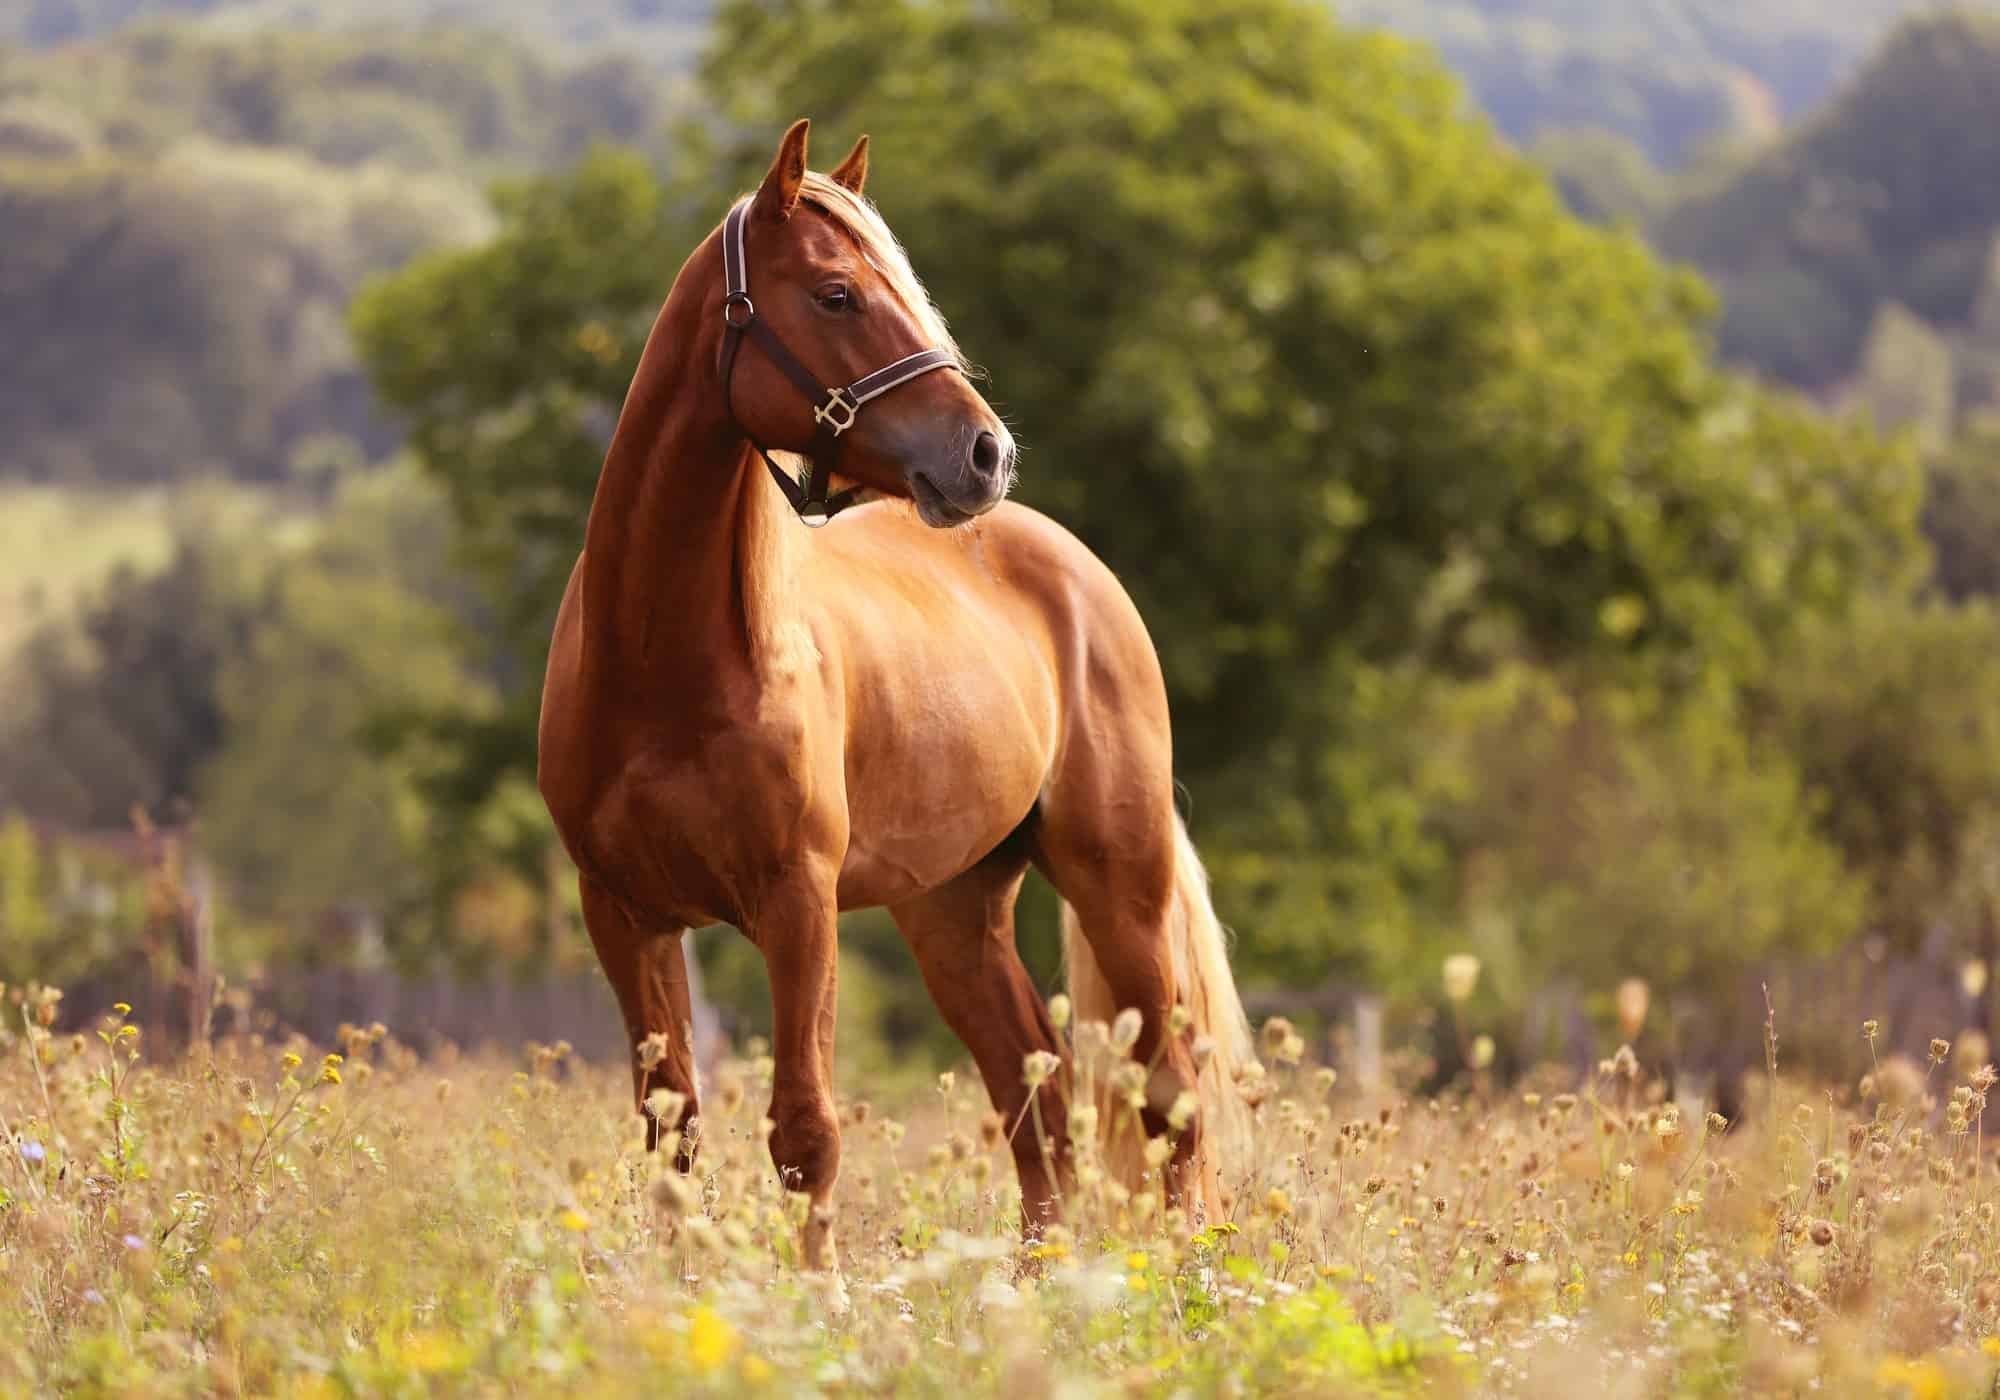 Horse pictures. Лошадь. Коричневый конь. Красивый конь. Красивые лошади на природе.